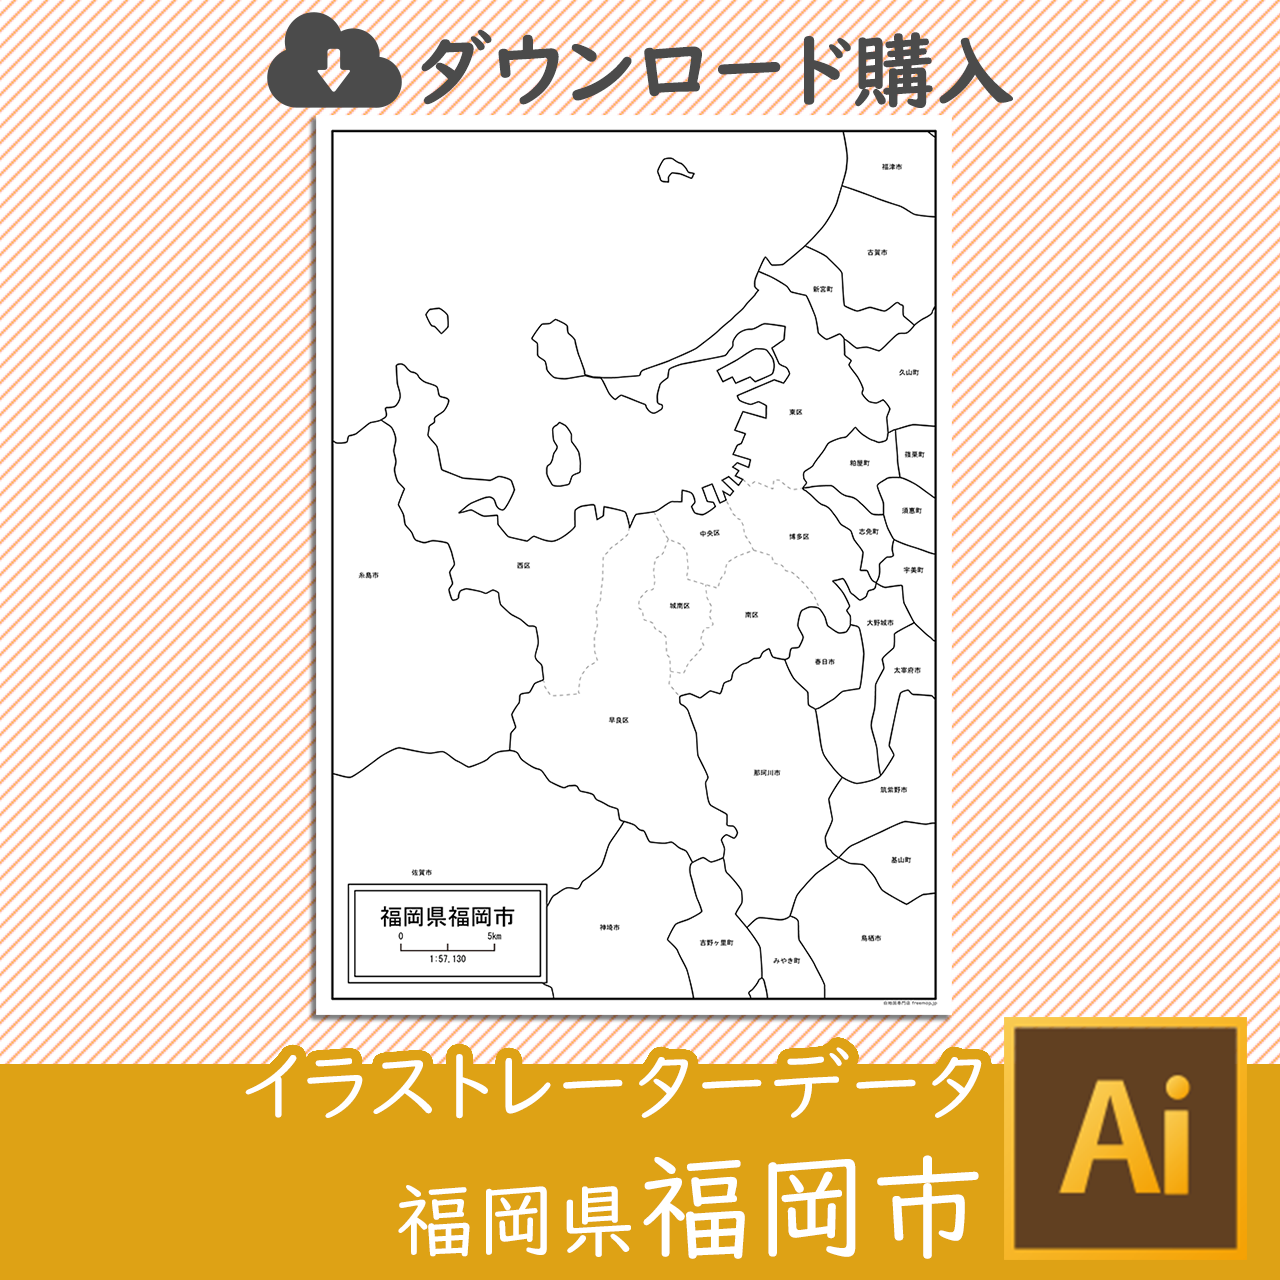 福岡市のaiデータのサムネイル画像